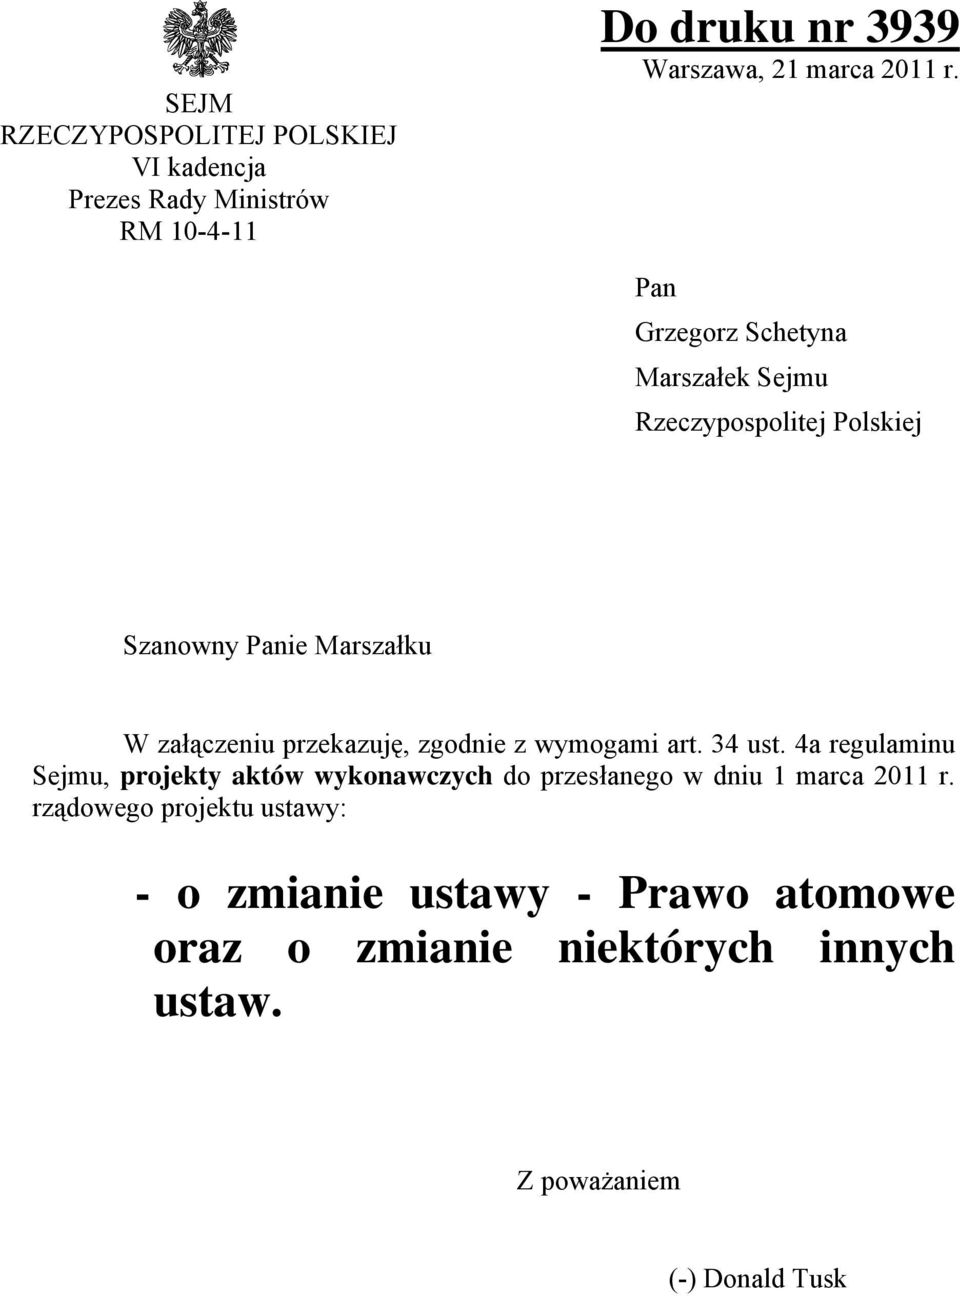 zgodnie z wymogami art. 34 ust. 4a regulaminu Sejmu, projekty aktów wykonawczych do przesłanego w dniu 1 marca 2011 r.